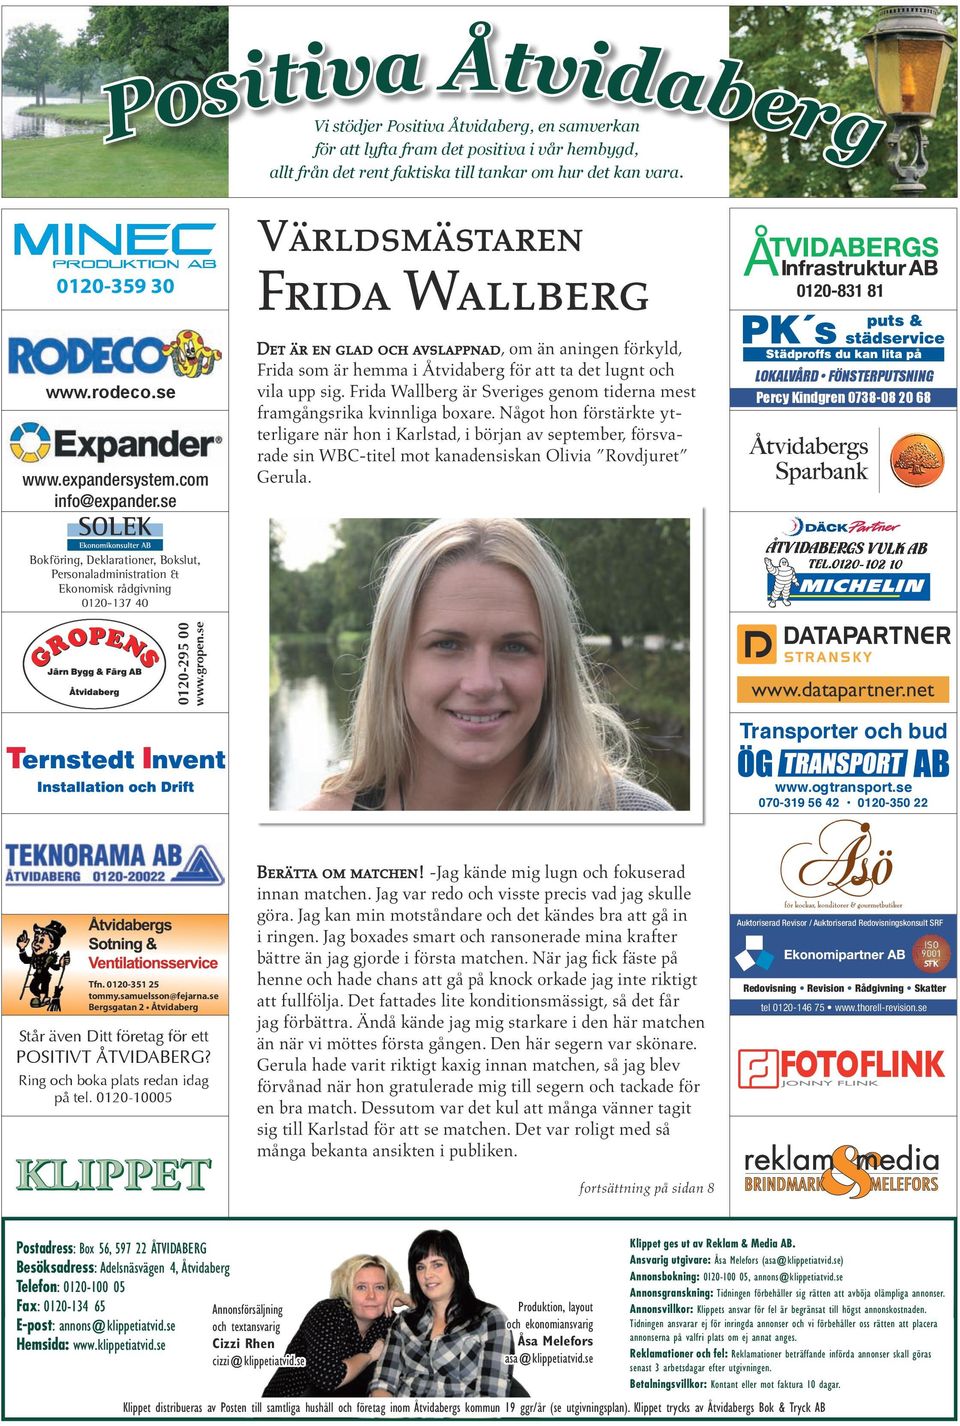 Frida Wallberg är Sveriges genom tiderna mest framgångsrika kvinnliga boxare.